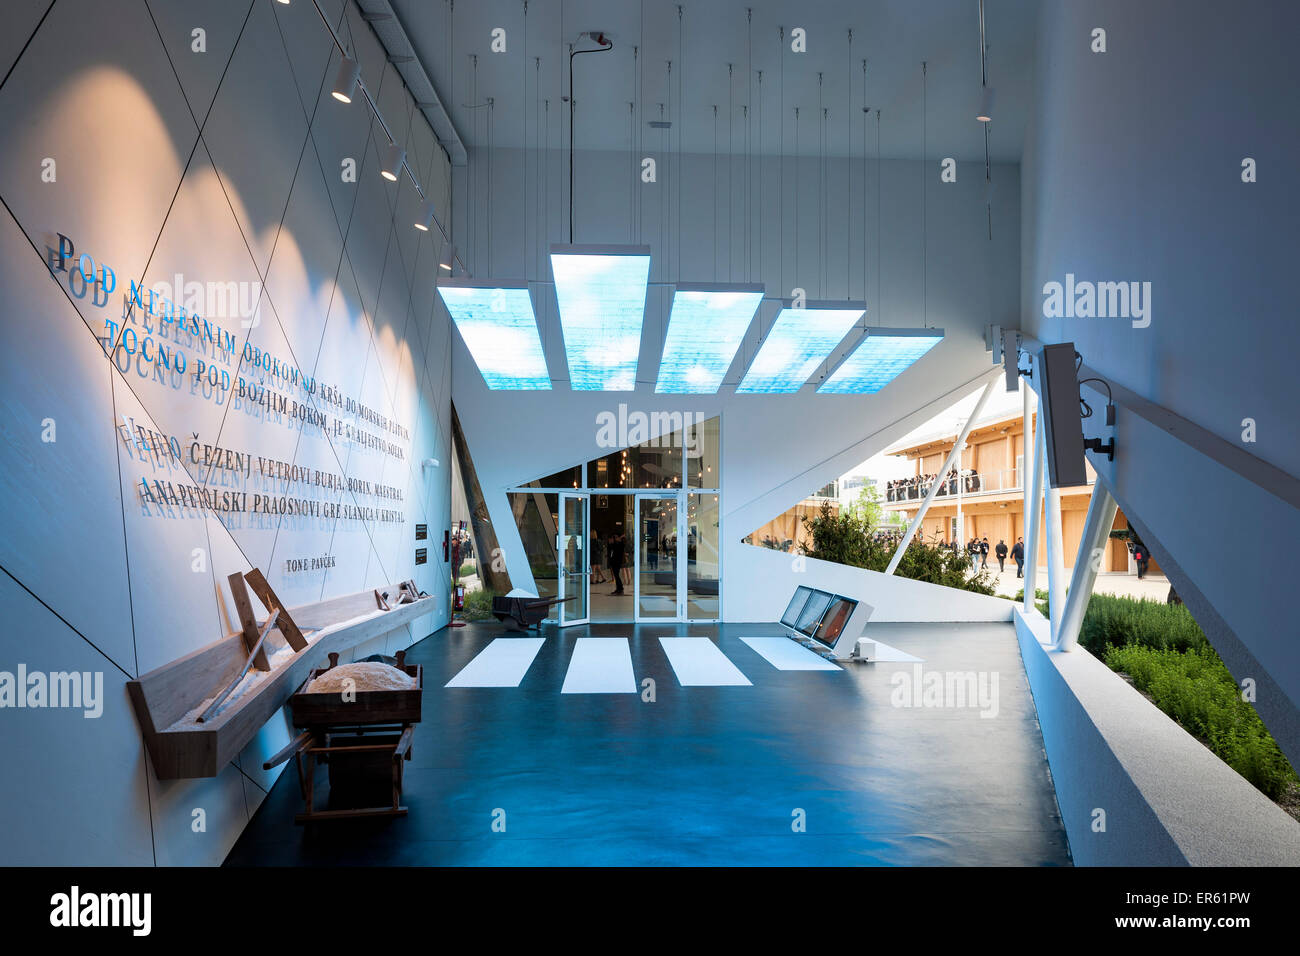 Themed exhibition room with view through window Milan Expo 2015 Slovenia Pavilion Milan Italy Architect SoNo Arhitekti 20 Stock Photo